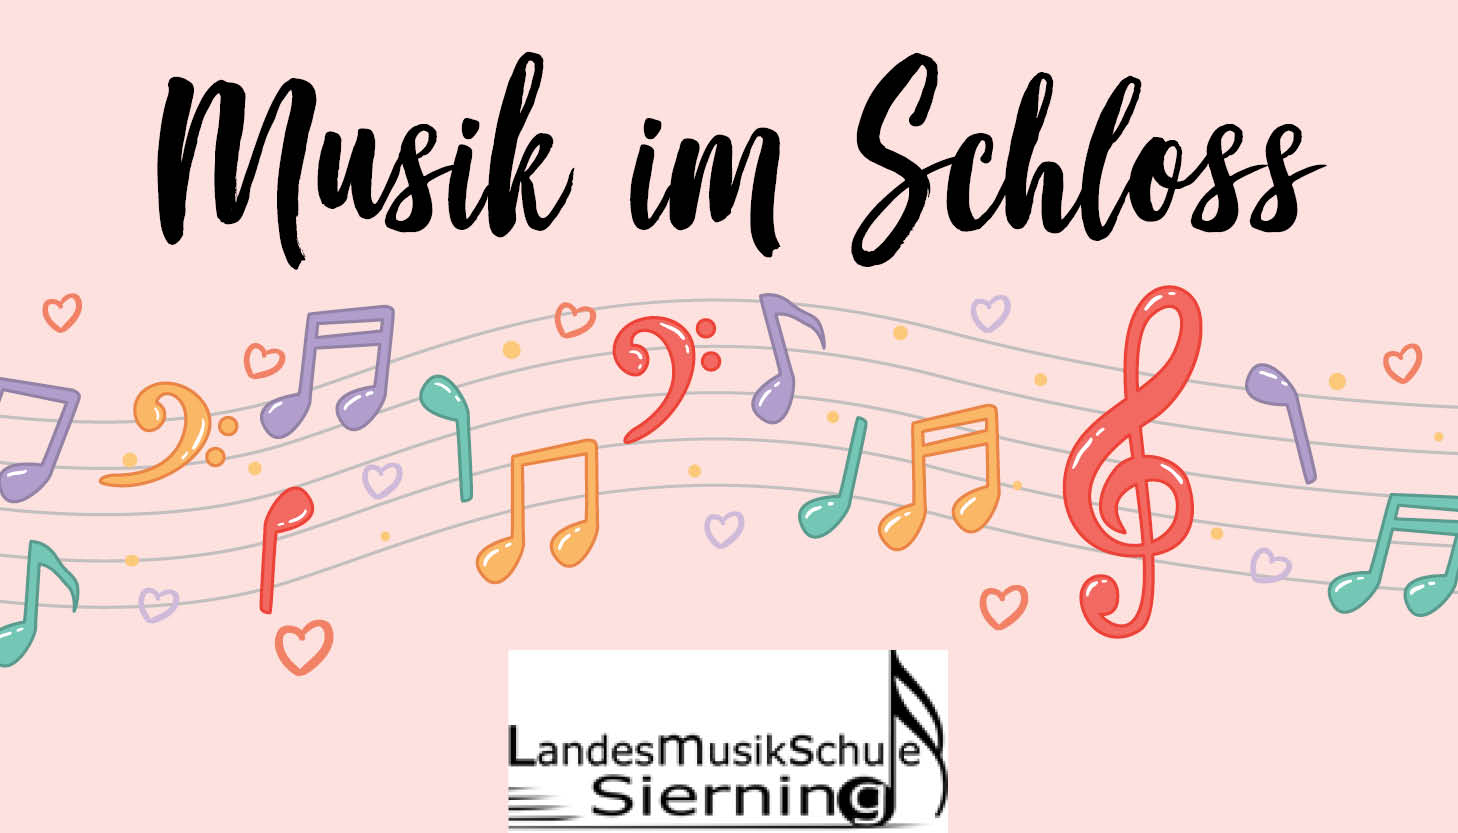 Musik im Schloss daistwaslos.at